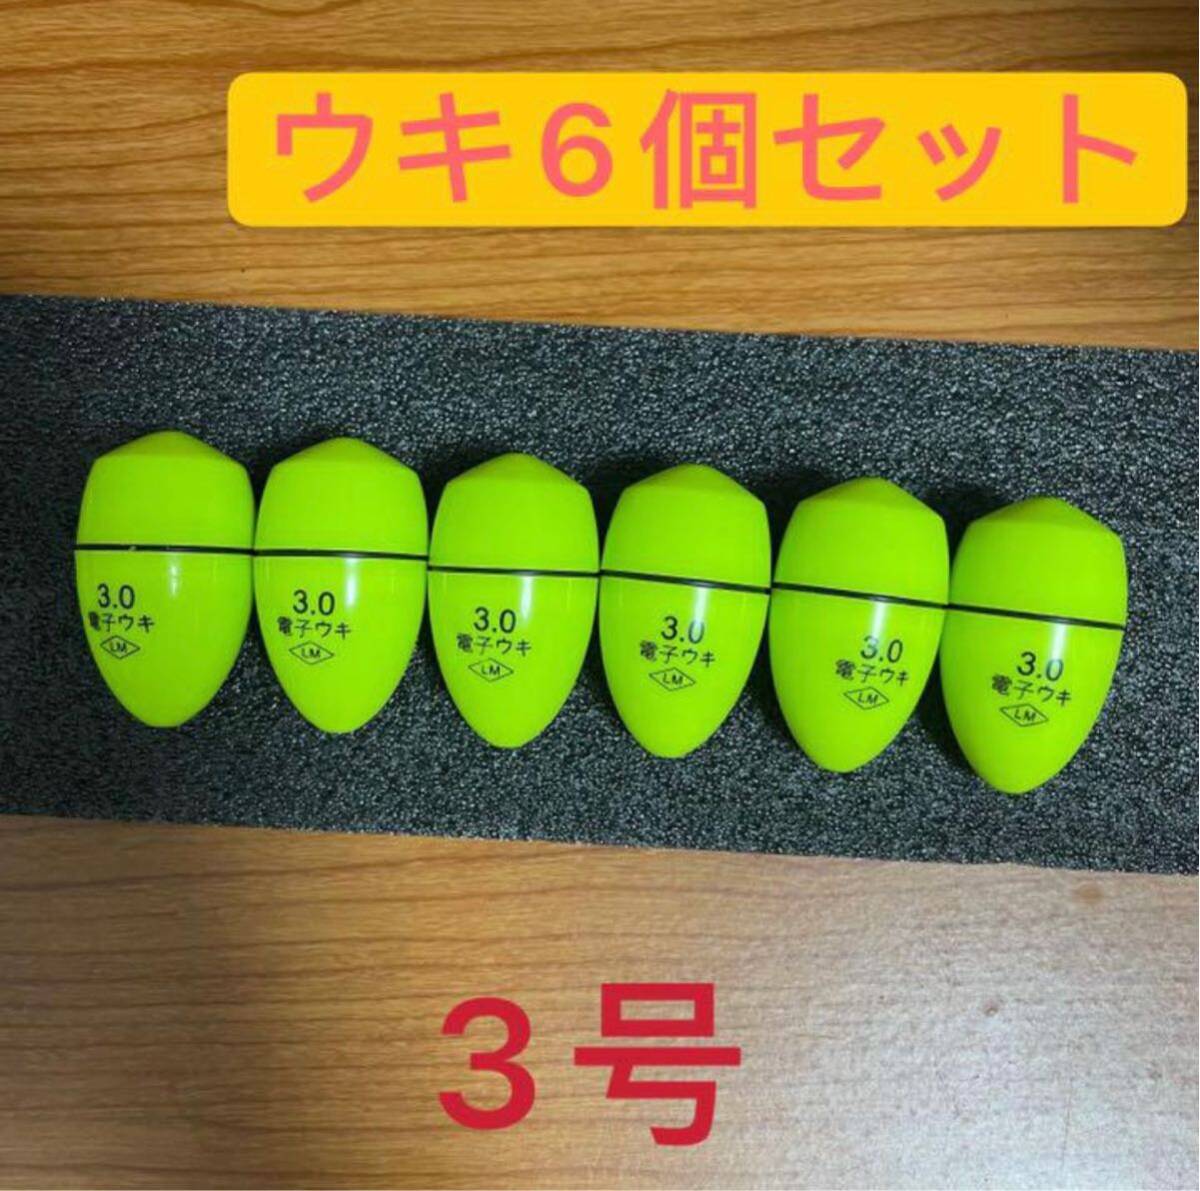 6個3号3.0号 黄緑色 電気ウキ 電子ウキ ふかせウキ 円錐ウキ どんぐりウキの画像1